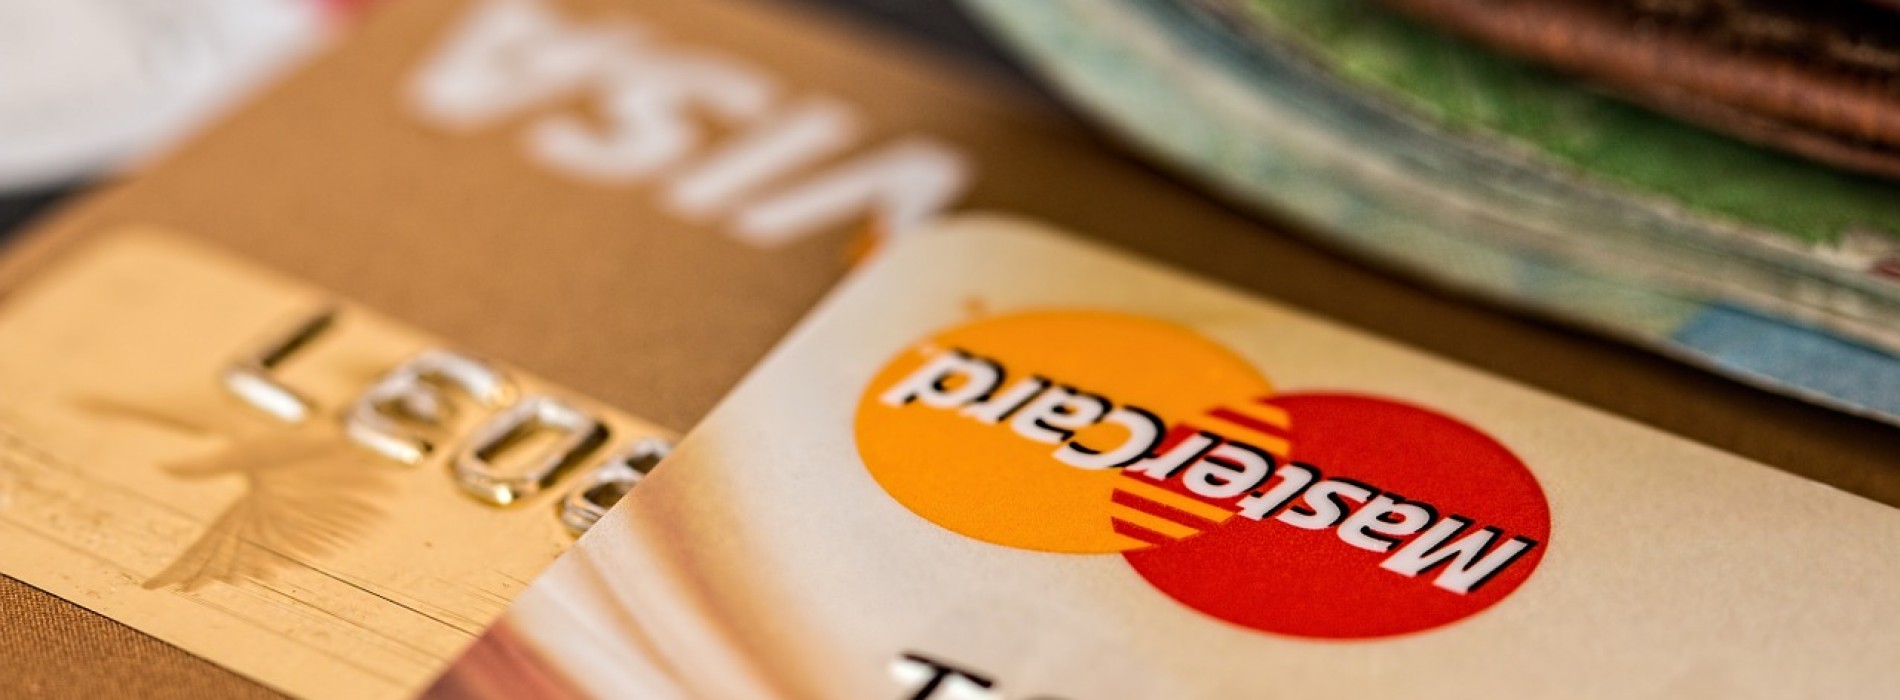 Dobrze dobrana do potrzeb karta kredytowa pozwala oszczędzać! Jak ją wybrać?